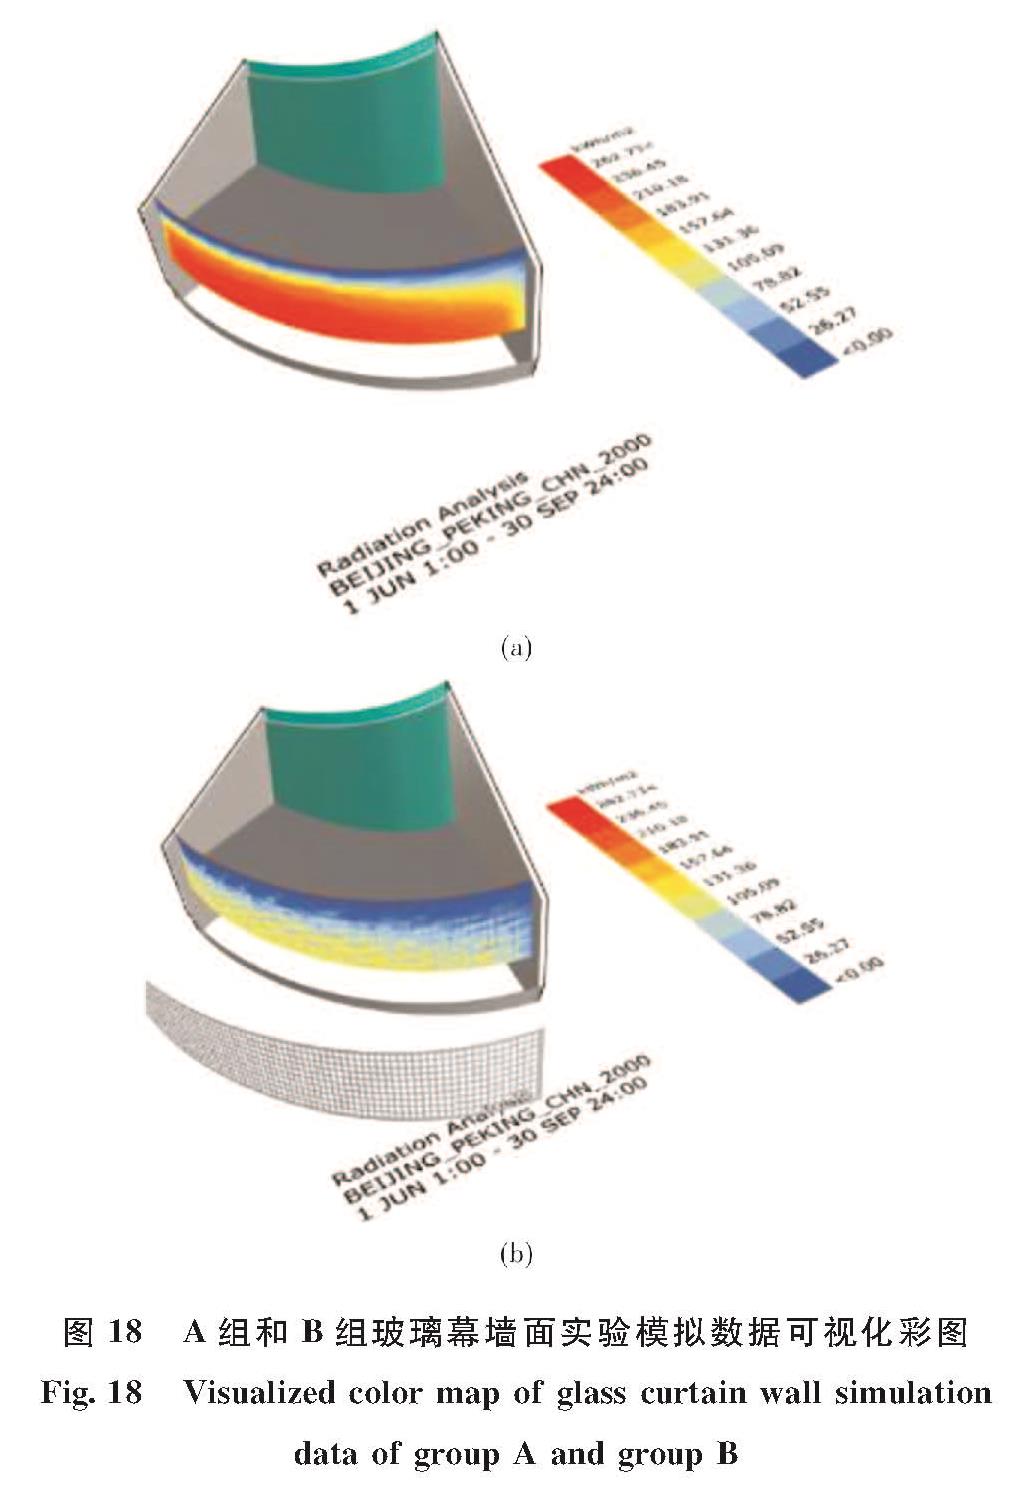 图18 A组和B组玻璃幕墙面实验模拟数据可视化彩图<br/>Fig.18 Visualized color map of glass curtain wall simulation data of group A and group B